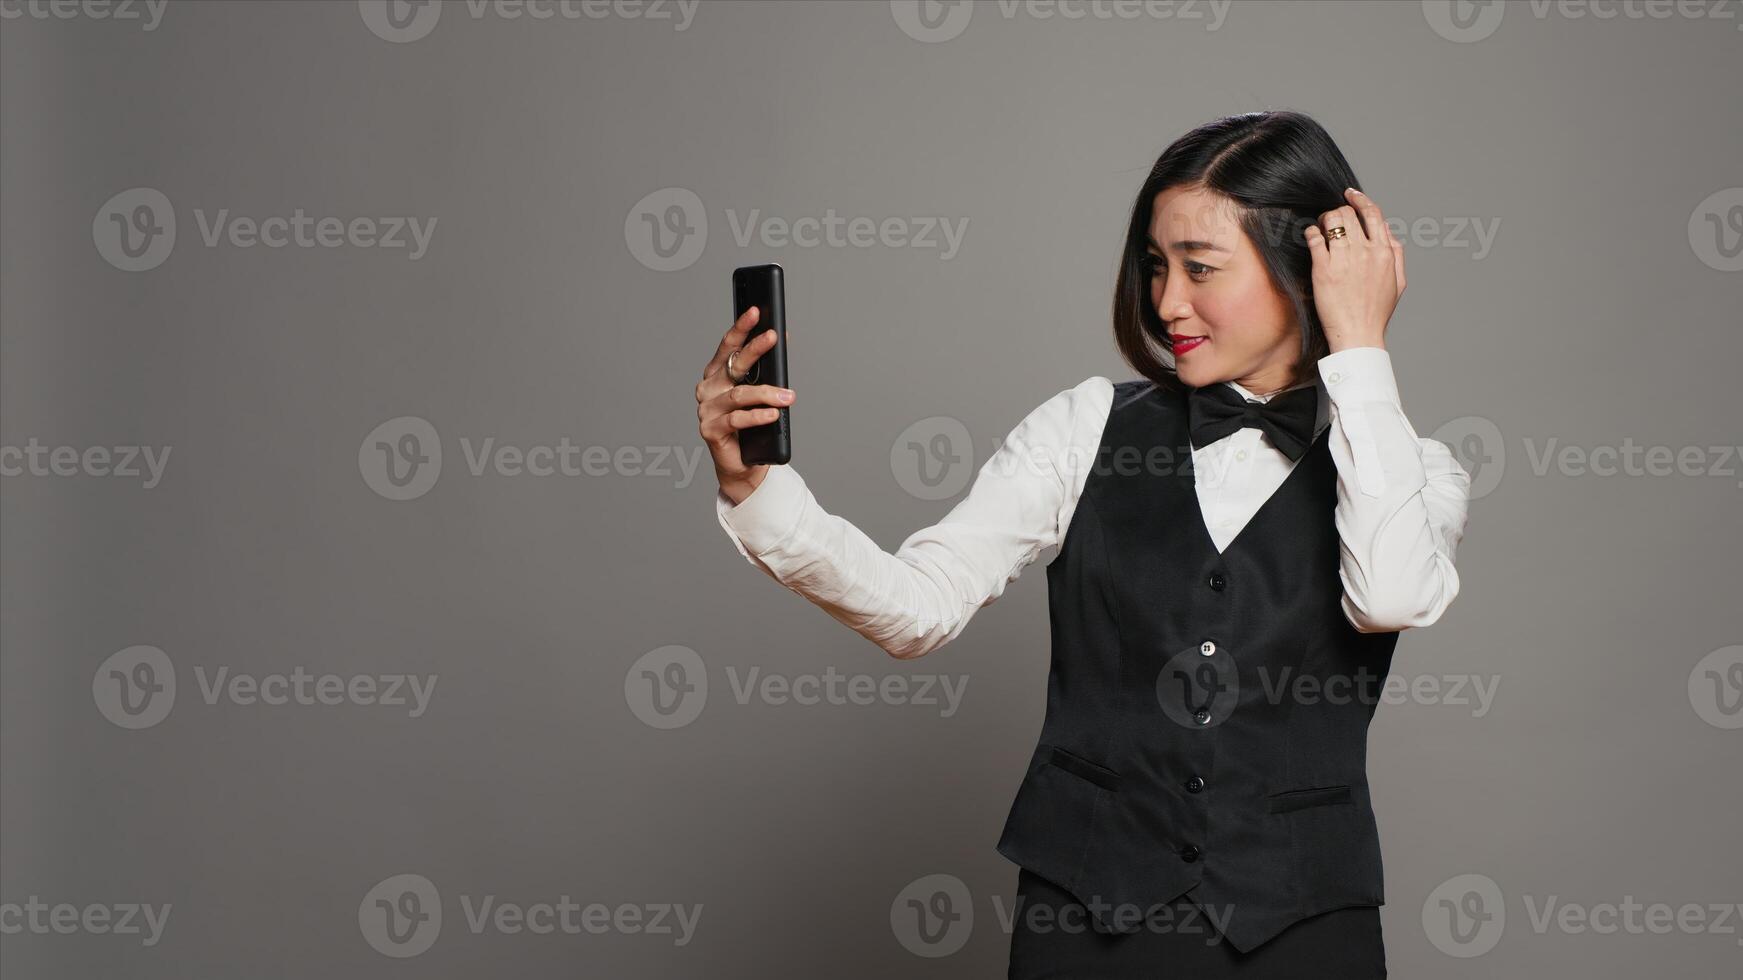 hotell concierge tar foton på smartphone app i studio, har roligt med bilder och arbetssätt som en receptionist. asiatisk främre skrivbord personal använder sig av mobil telefon till fånga dumbom selfies. kamera a.